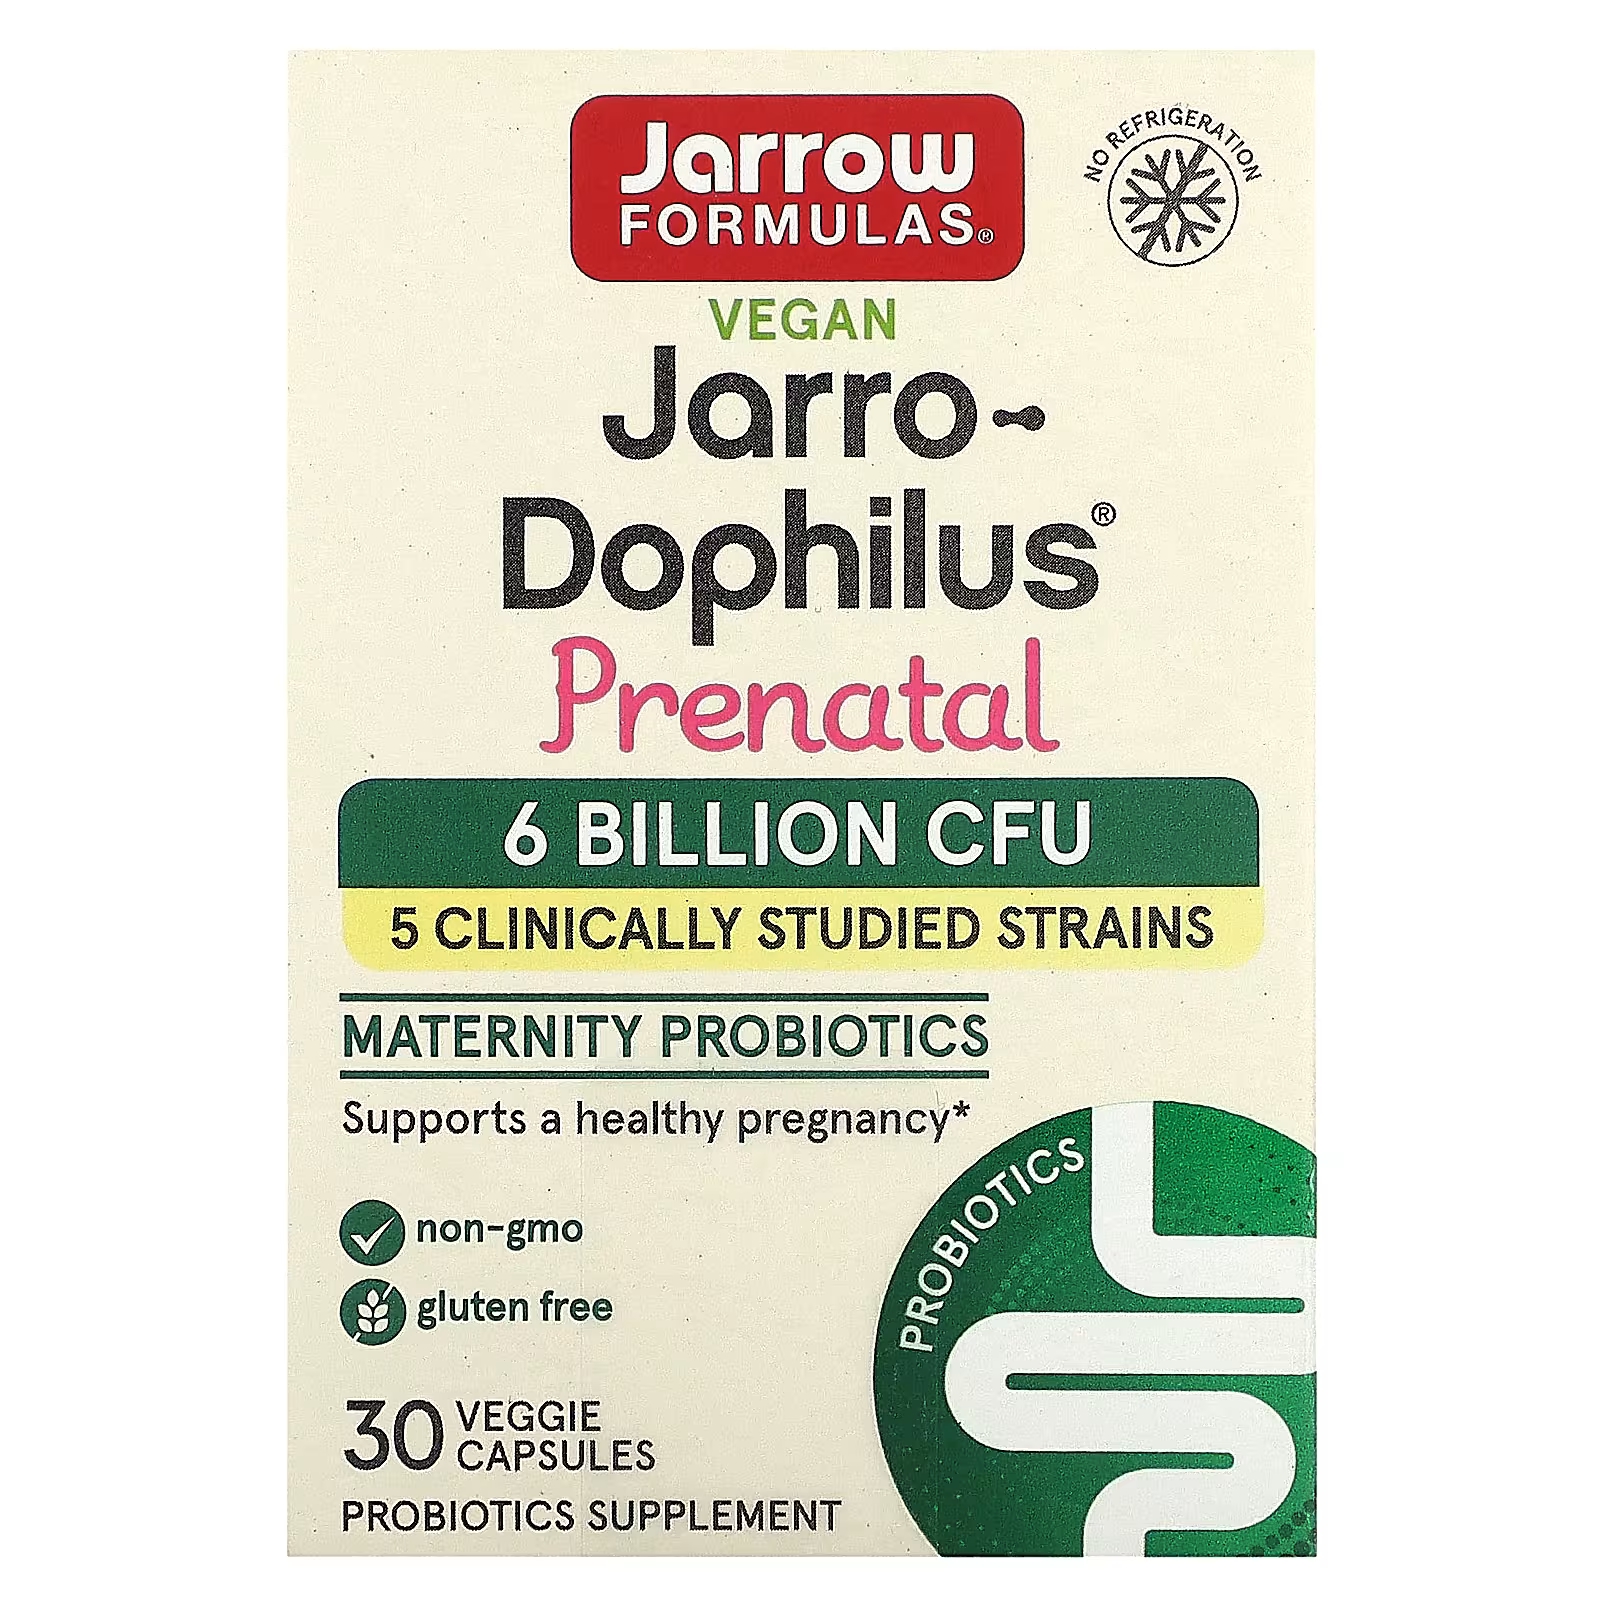 Jarrow Formulas Веганский Jarro-Dophilus Prenatal, 6 миллиардов КОЕ, 30 растительных капсул nature s way calmaid лаванда в клинически изученных дозировках 30 капсул